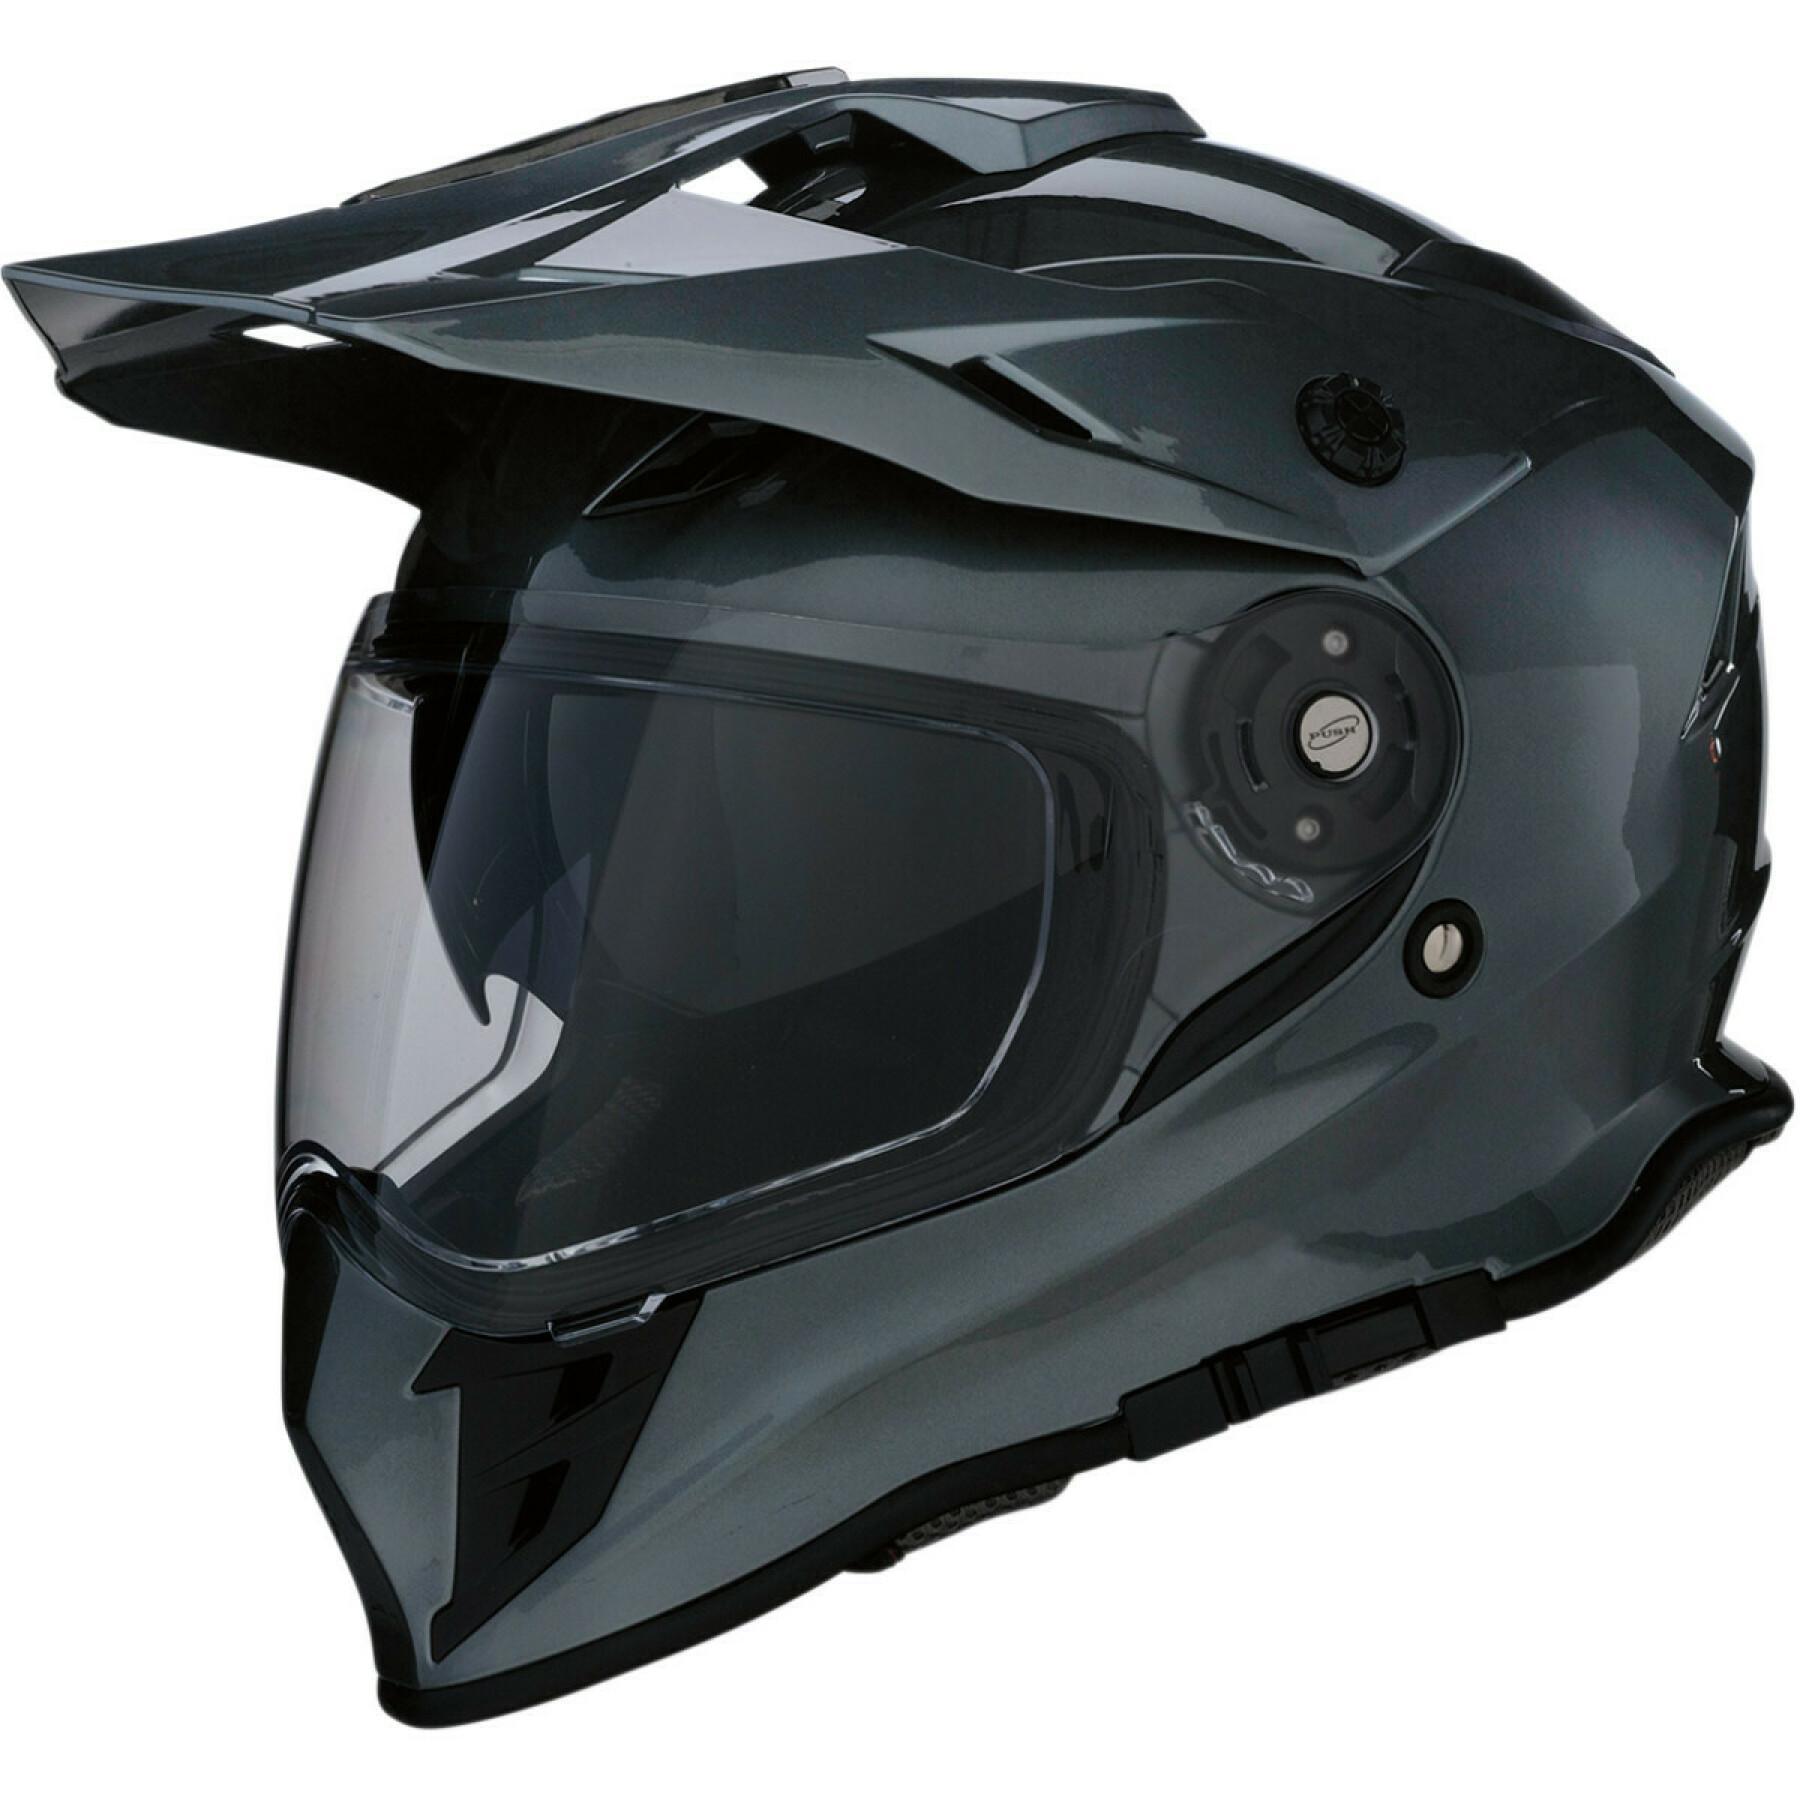 Modułowy kask motocyklowy Z1R range dark silver